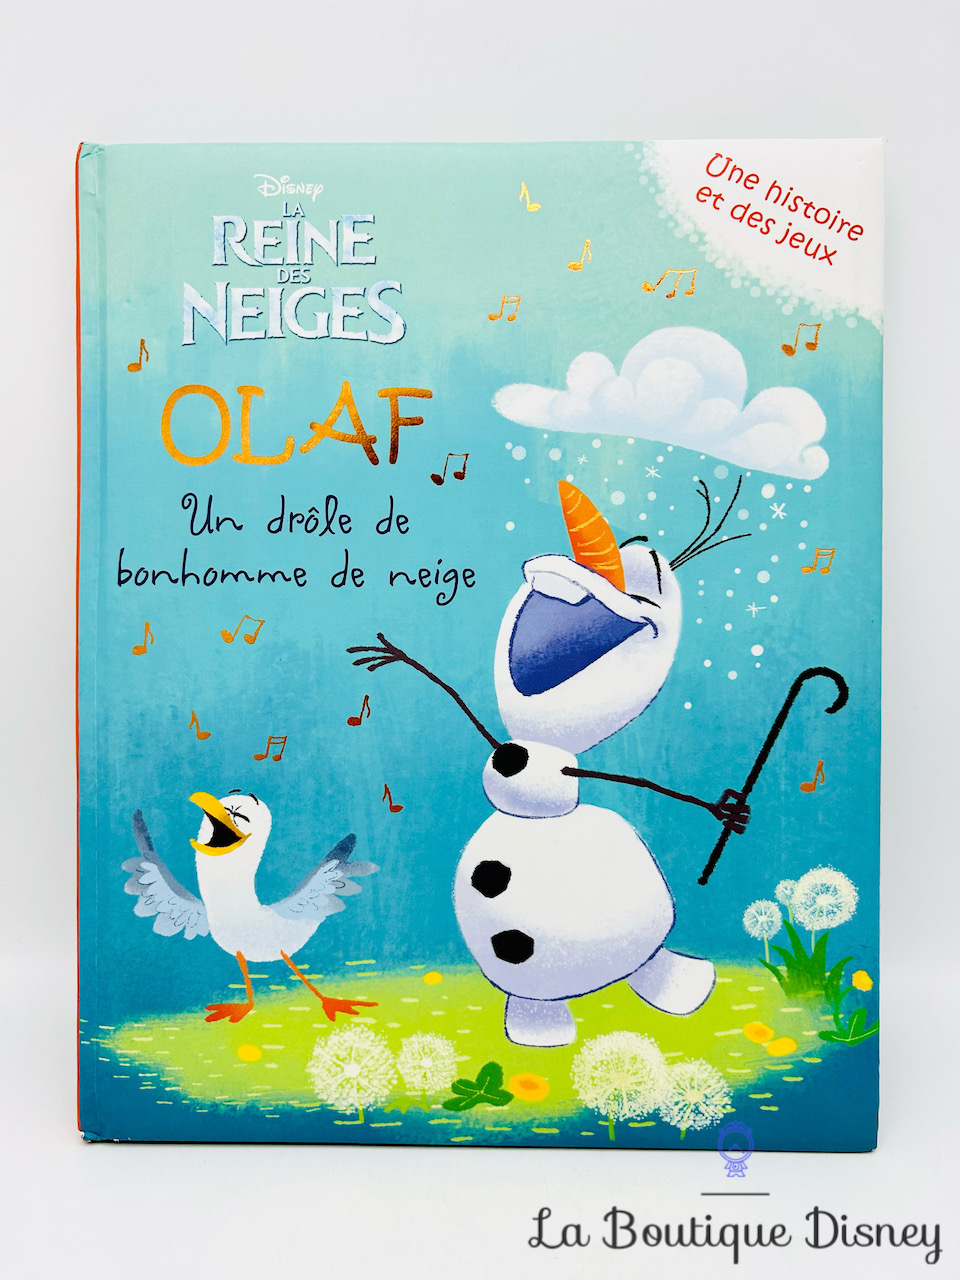 Livre Olaf Un drôle de bonhomme de neige La reine des neiges Disney Une histoire et des jeux